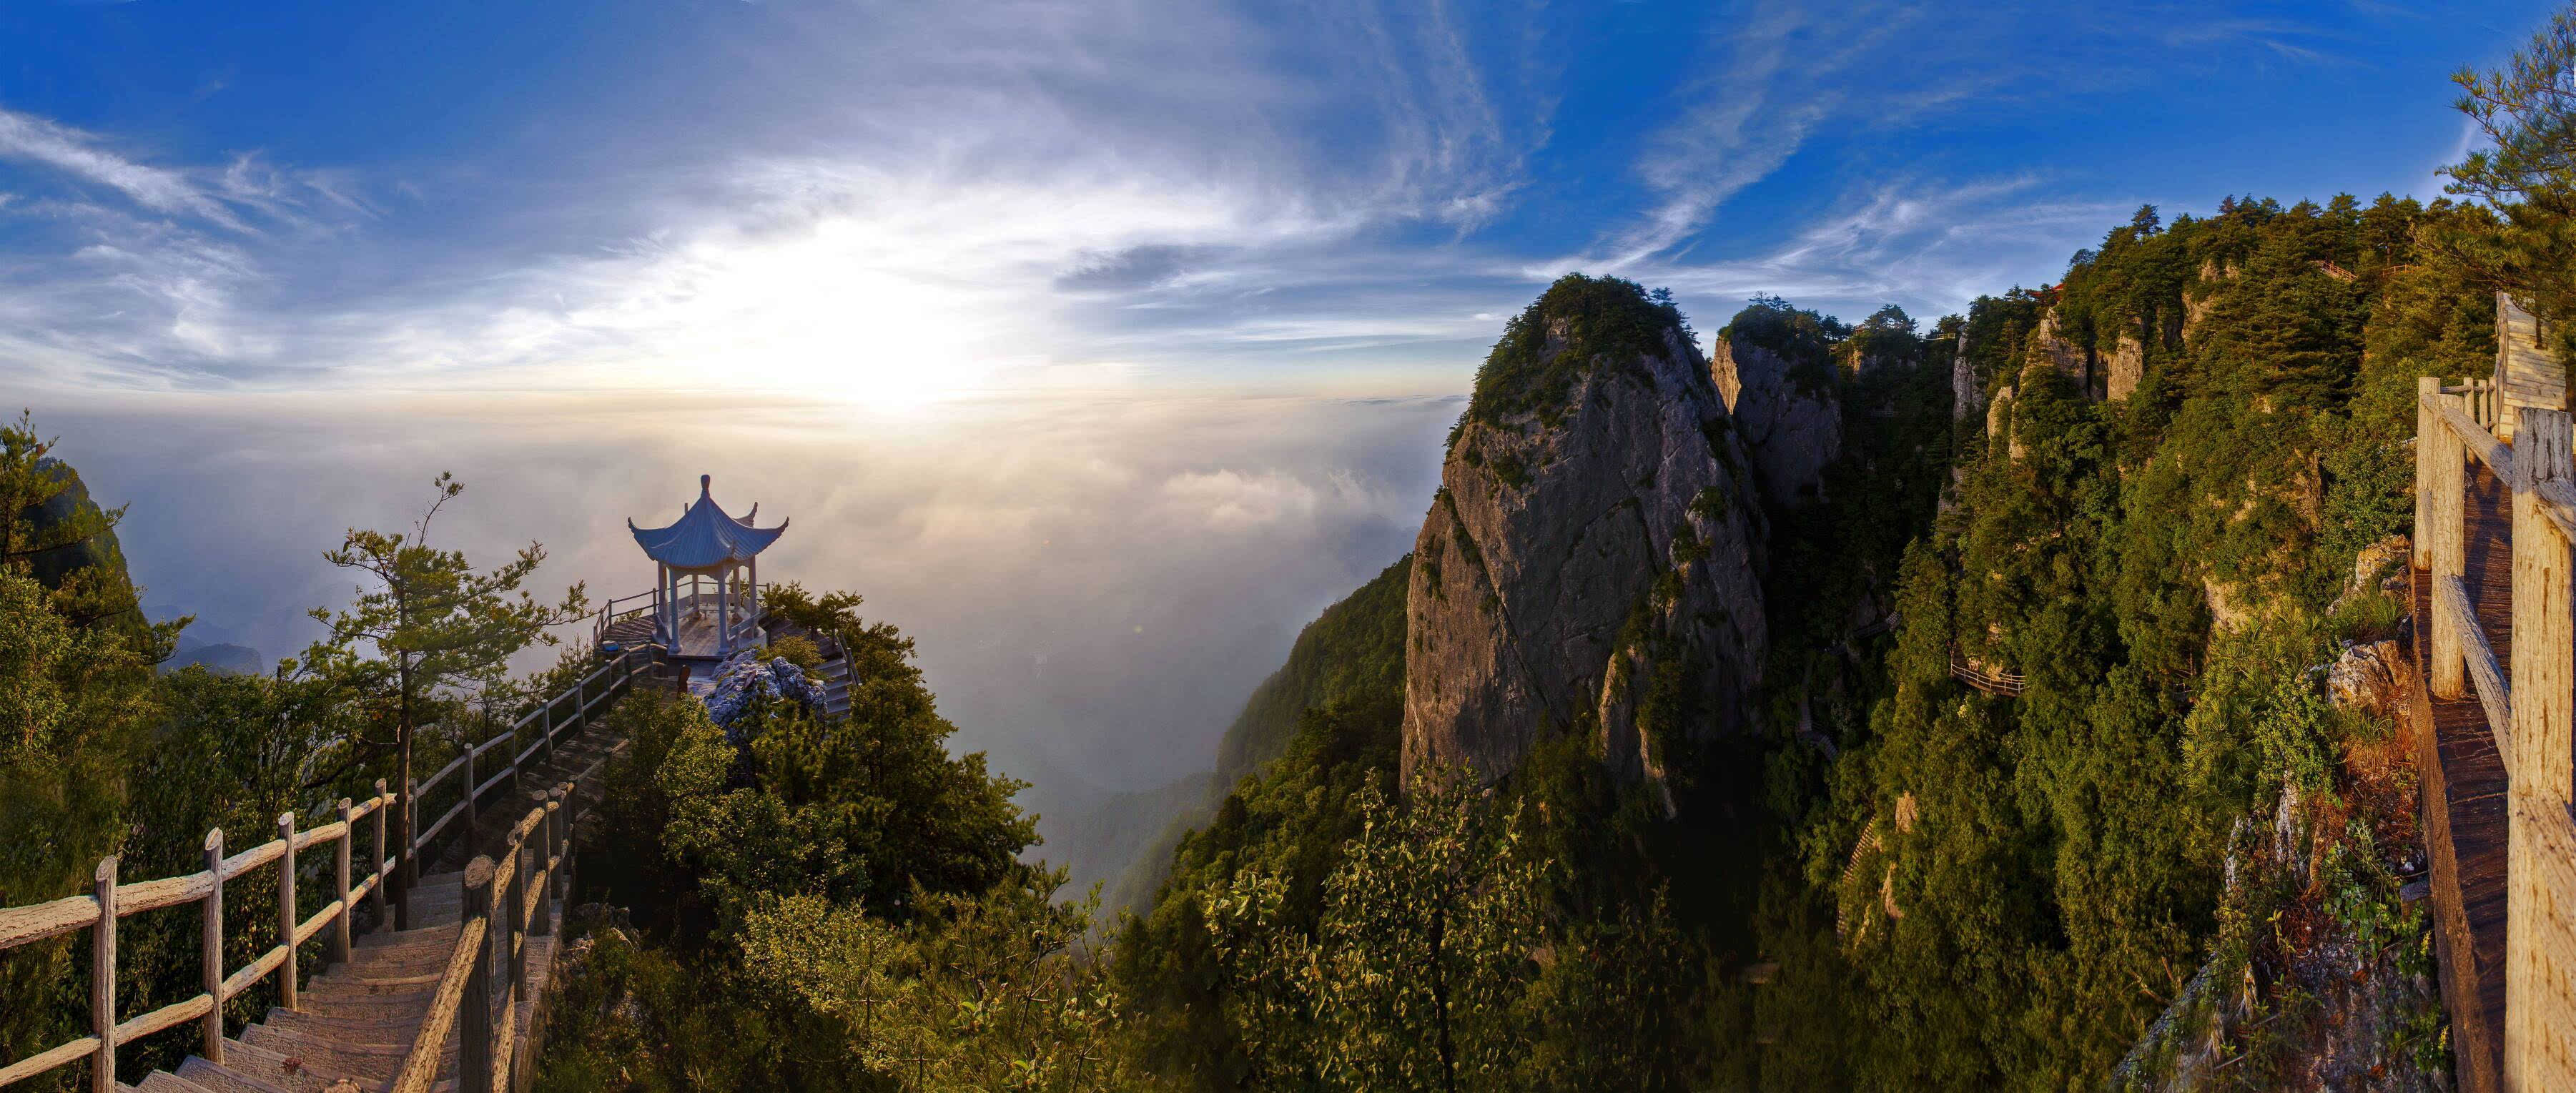 秦岭最美是商洛 秦岭生态旅游节将在陕西商洛举办